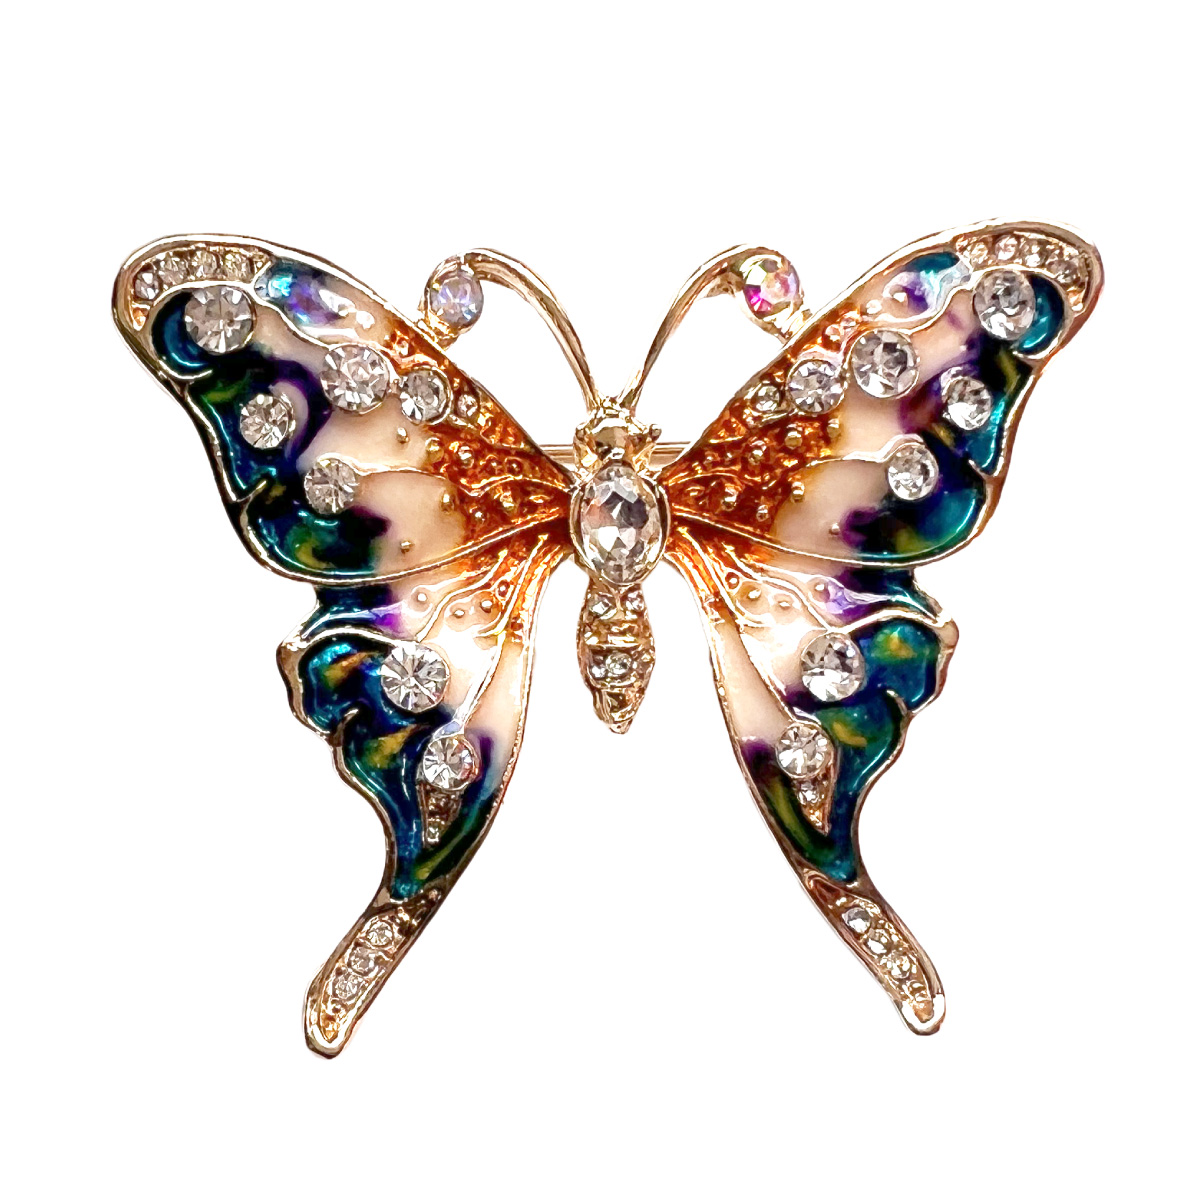 ブローチ 蝶 バタフライ 虫 ラインストーン パヴェ キラキラ おしゃれ カジュアル 個性的